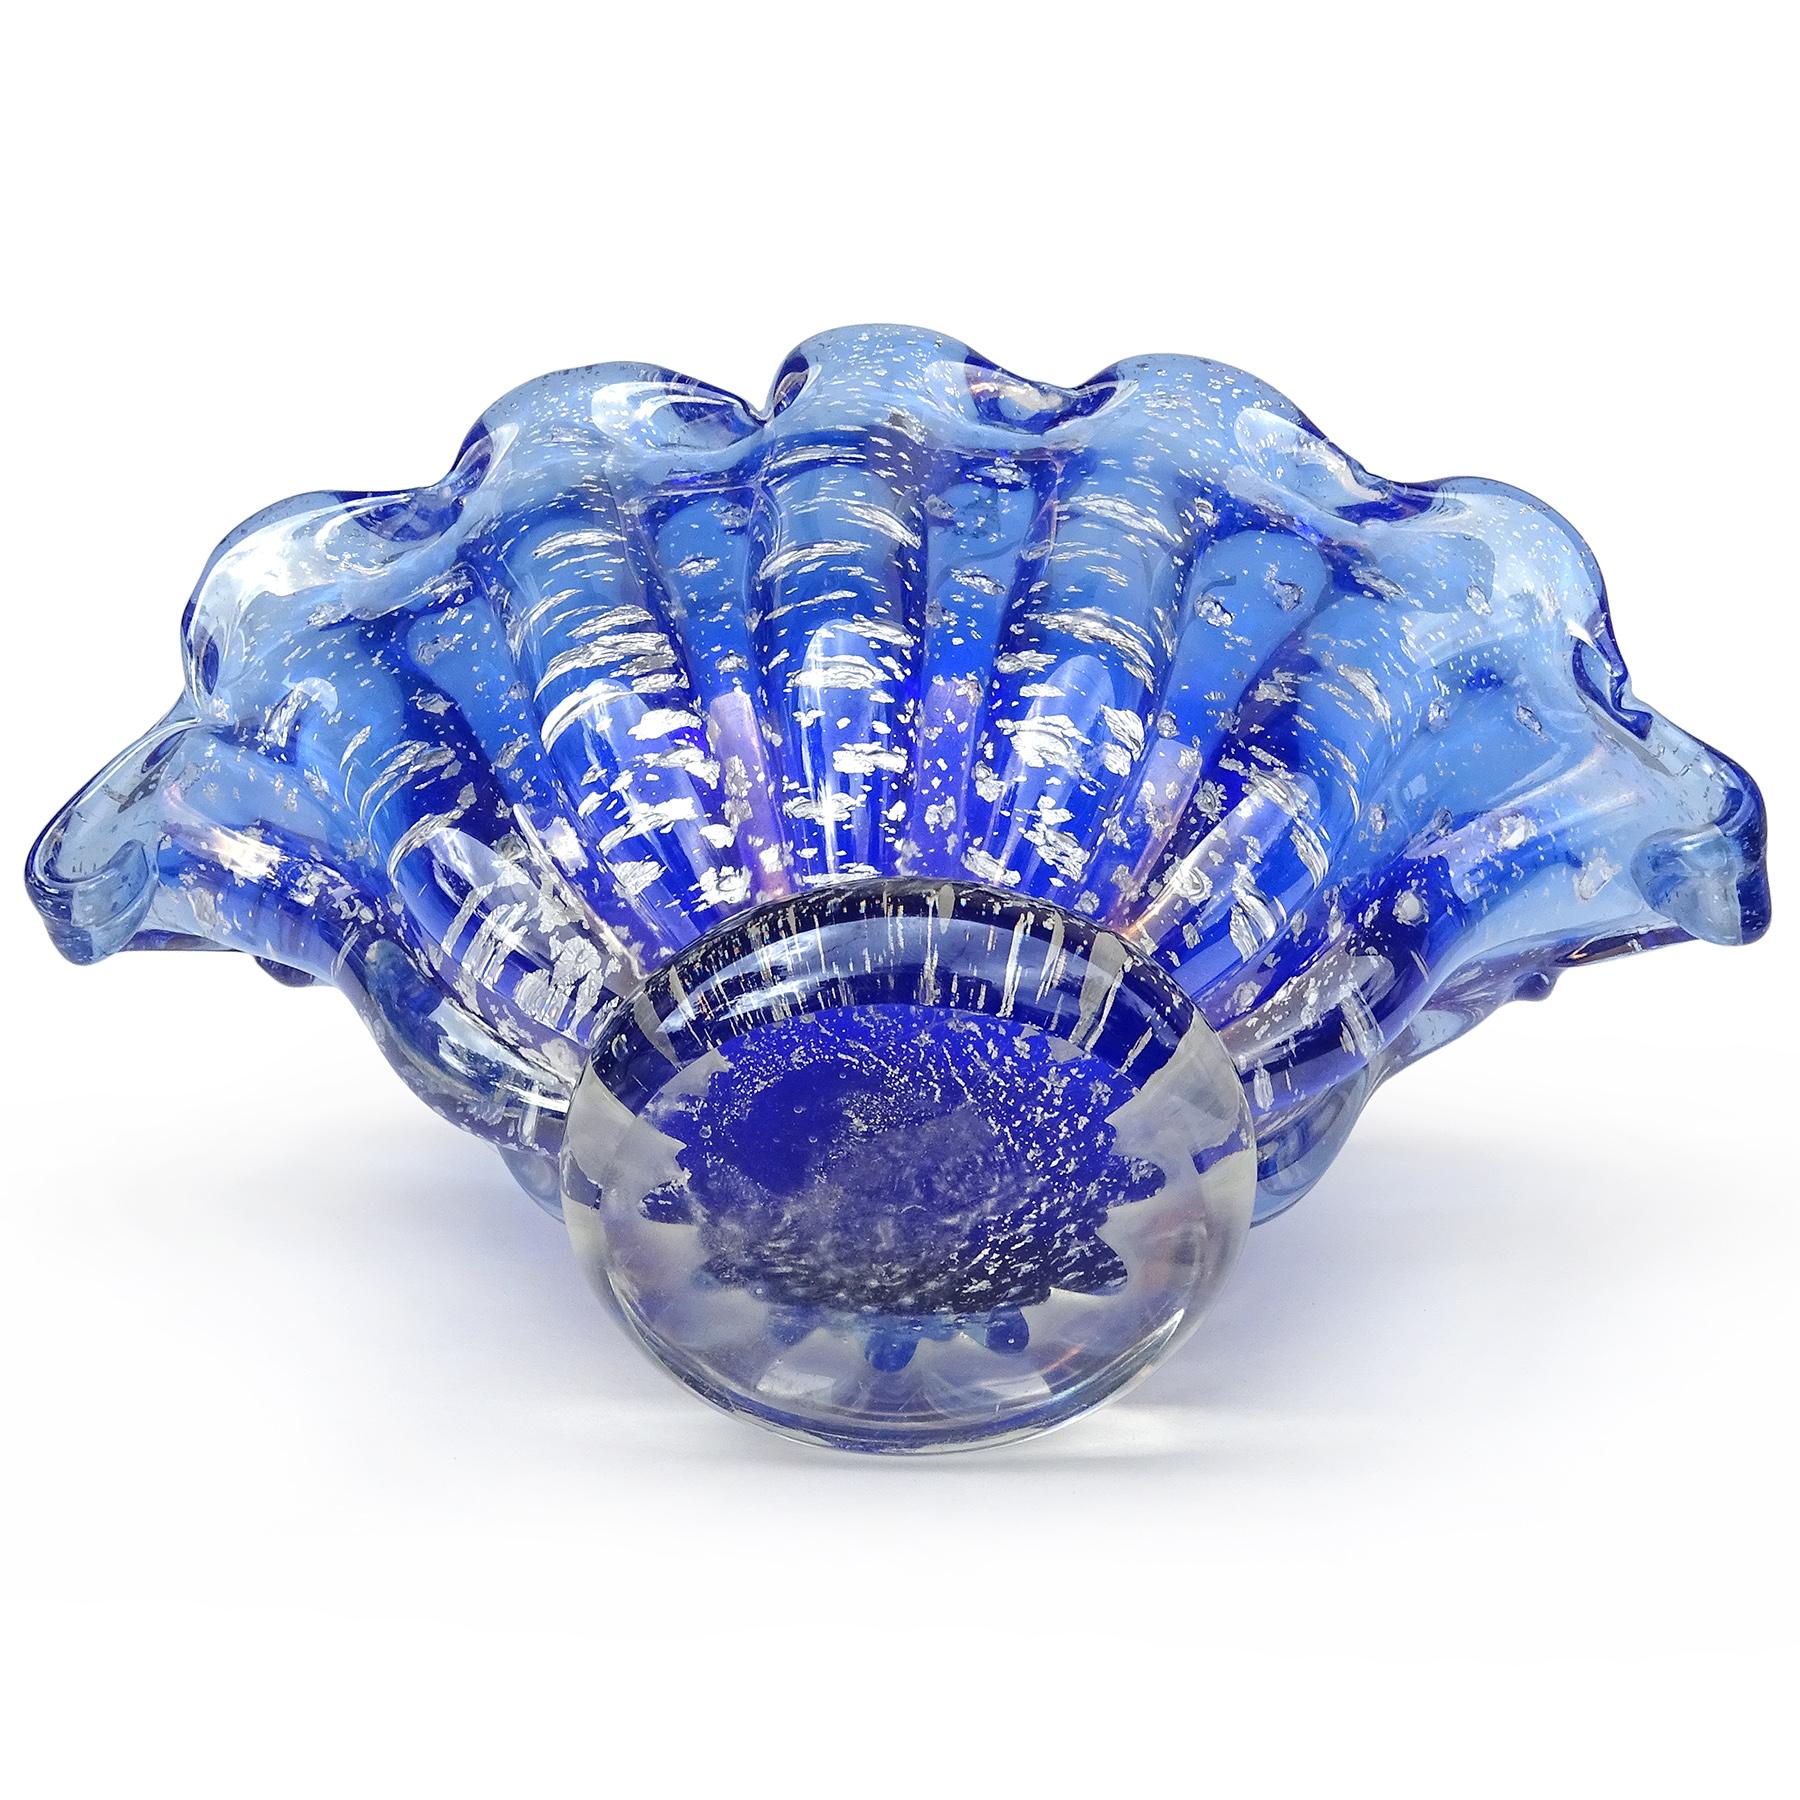 Barovier Toso Murano Cobalt Blue Silver Flecks Italian Art Glass Shell Bowl Vase For Sale 1